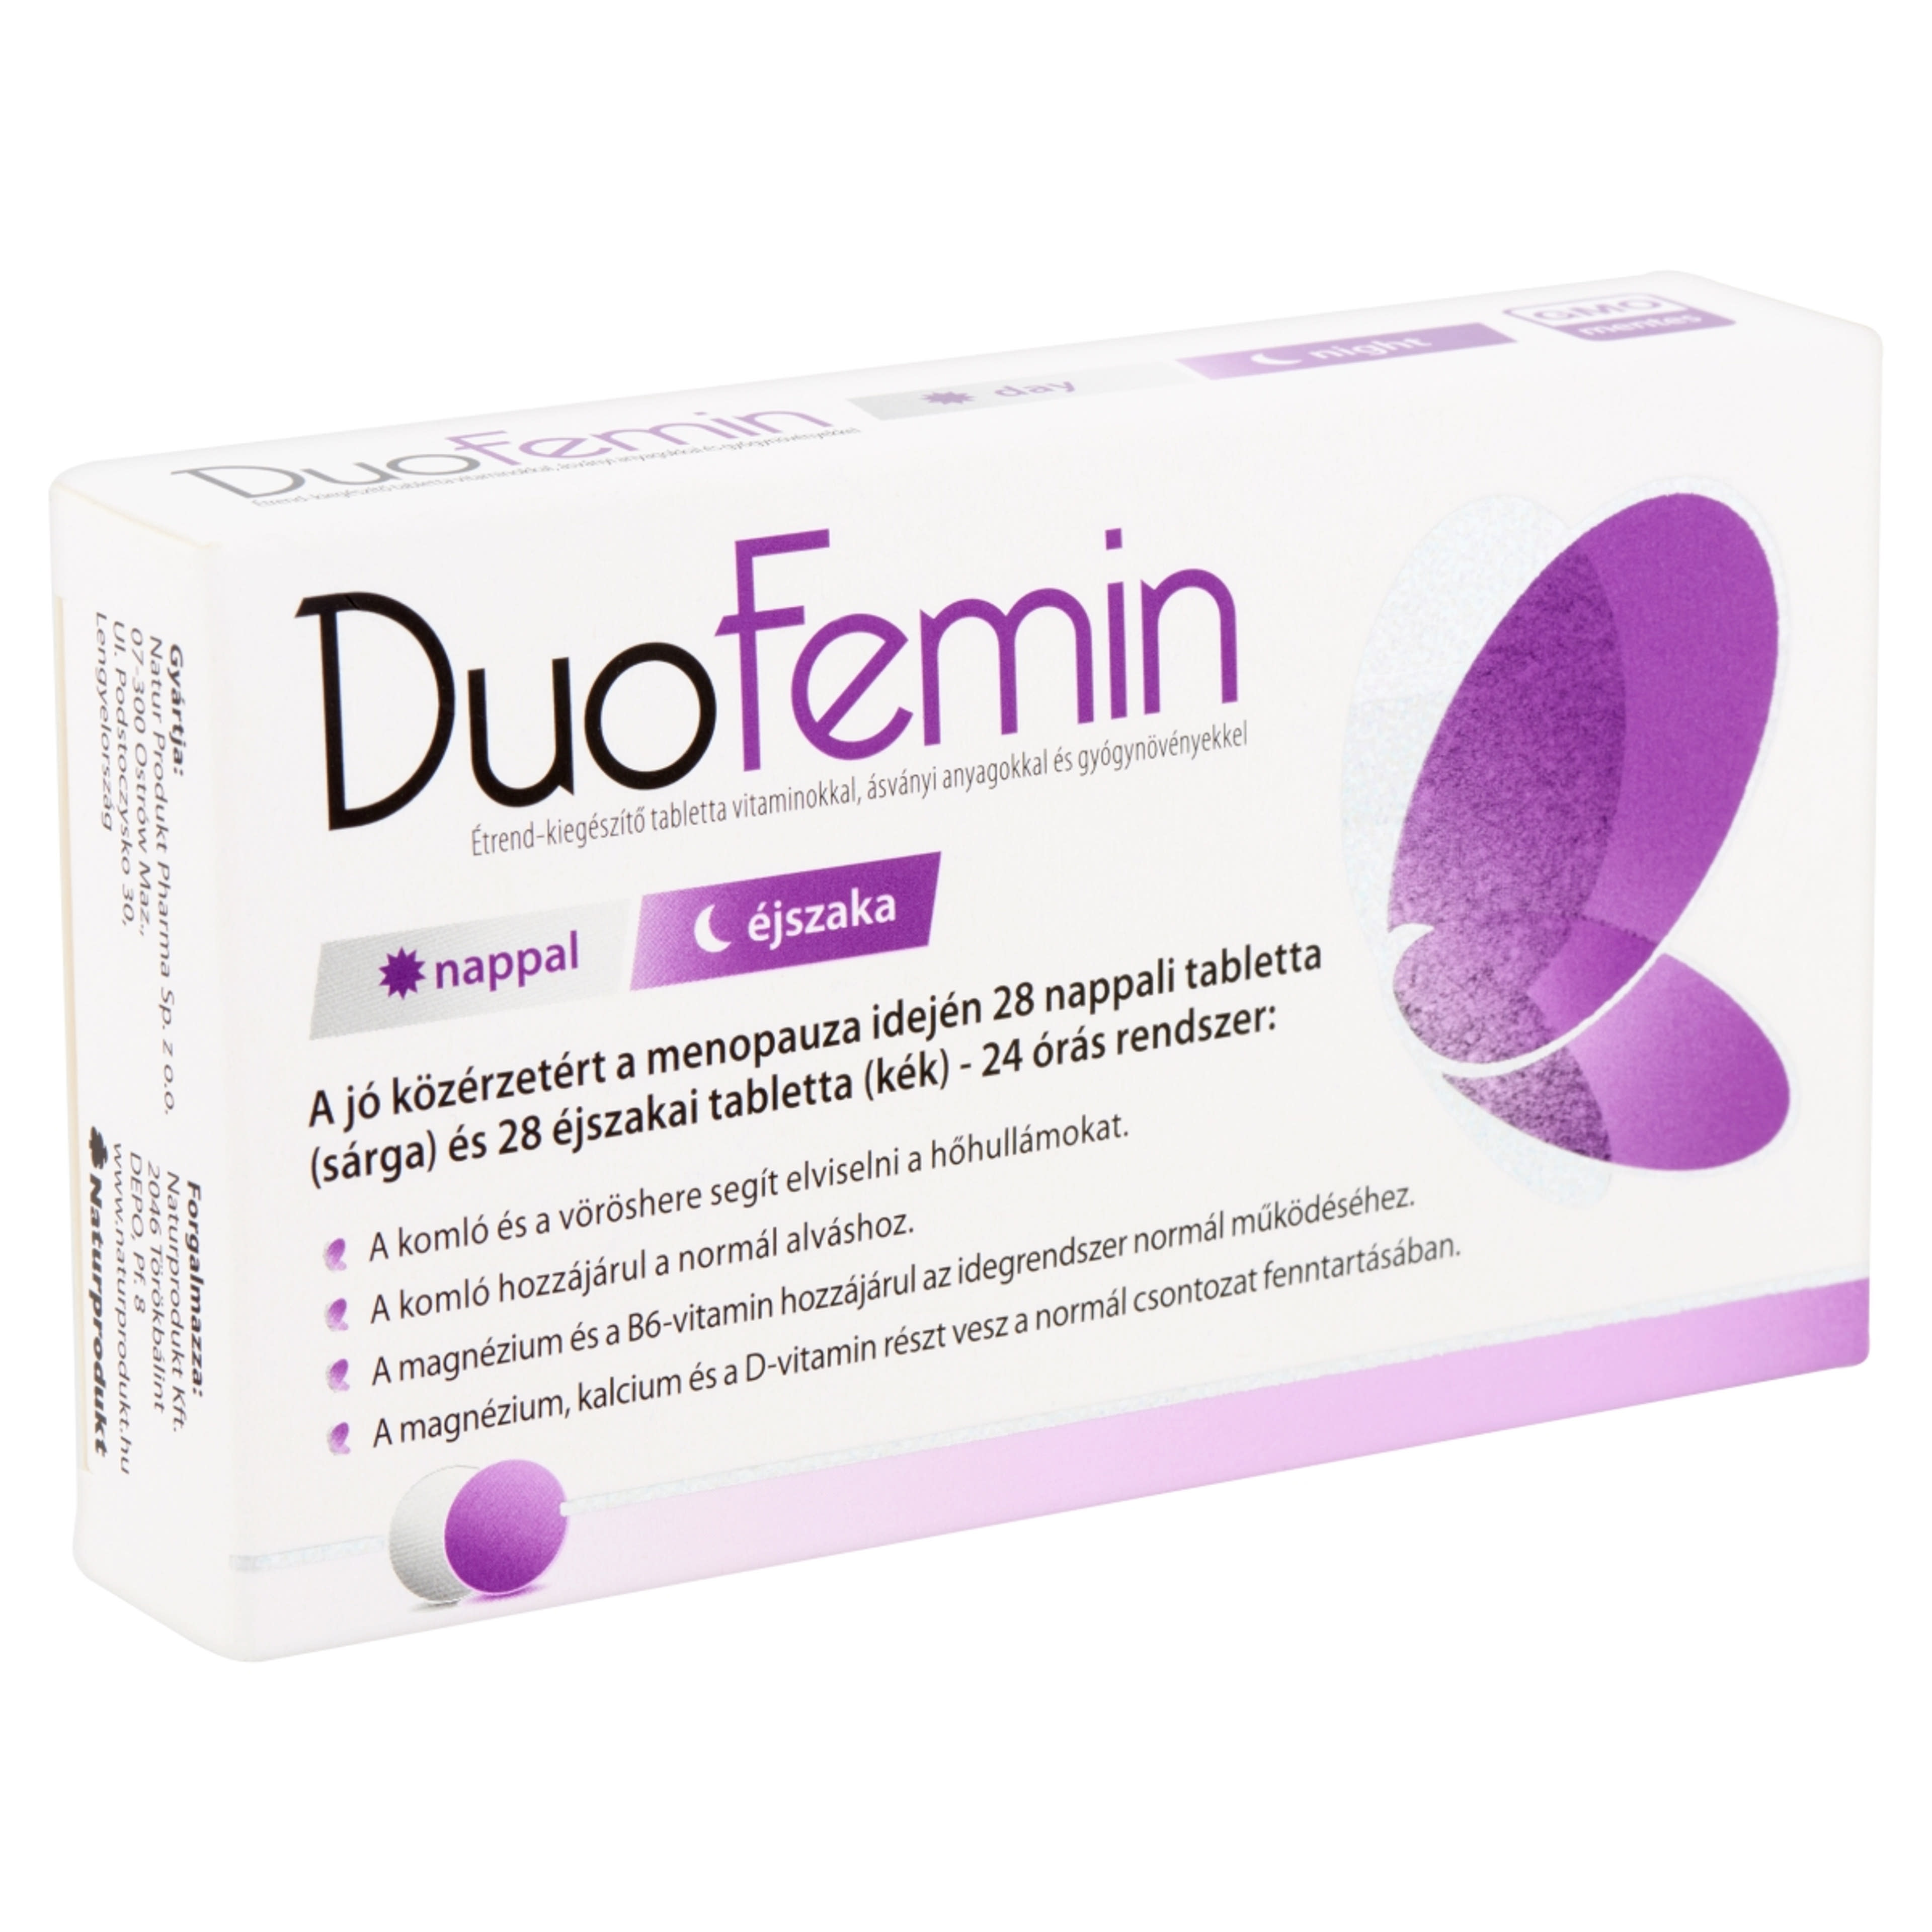 Duofenim Étrendkiegészítő Vitaminokal Tabletta (2x28db) - 54 db-4